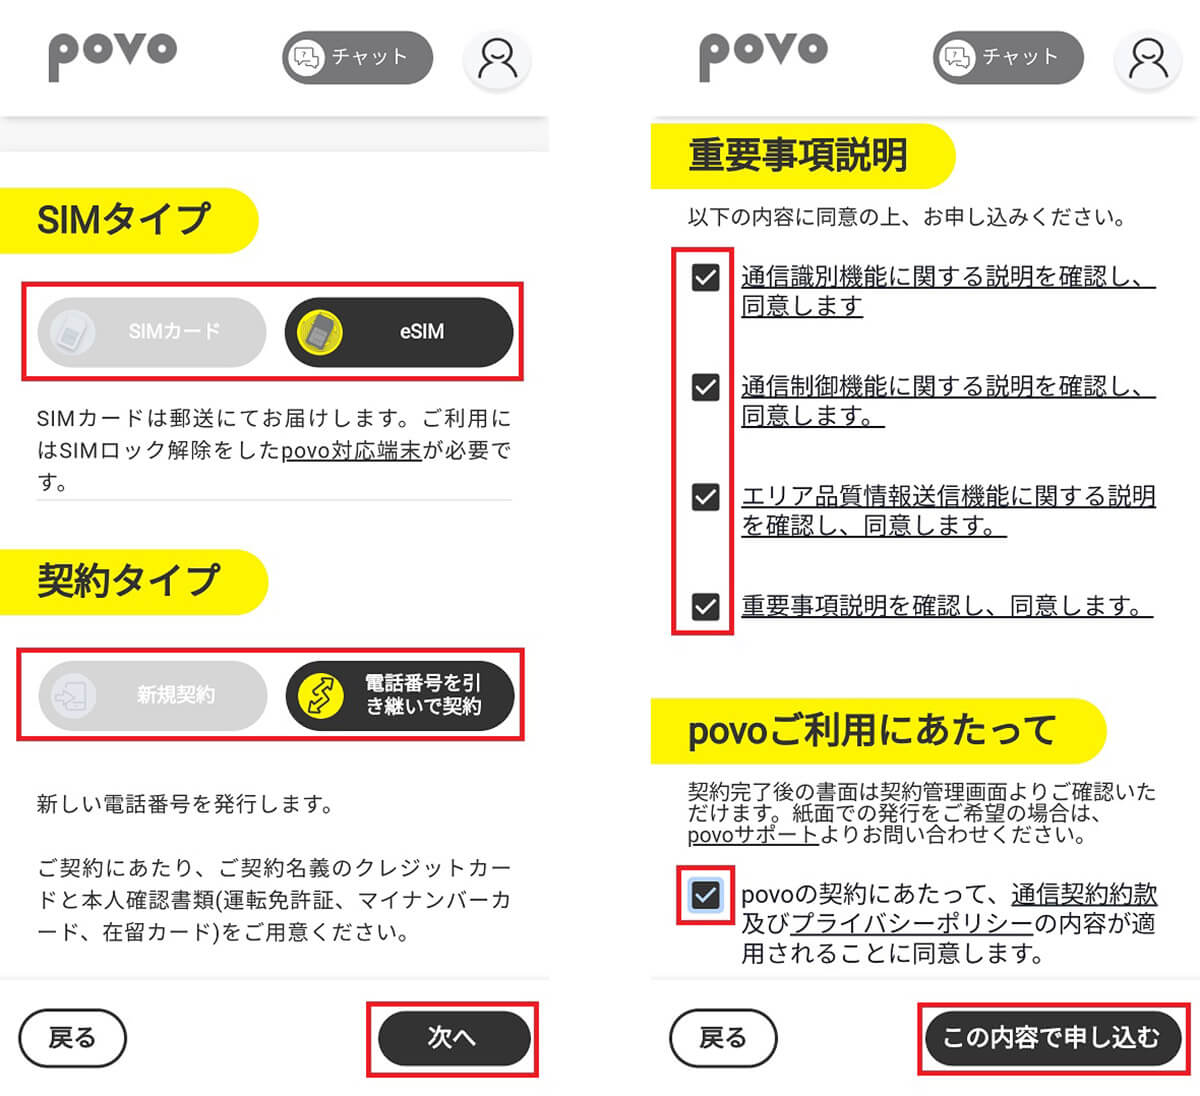 povo2.0アプリを使って申し込む手順3